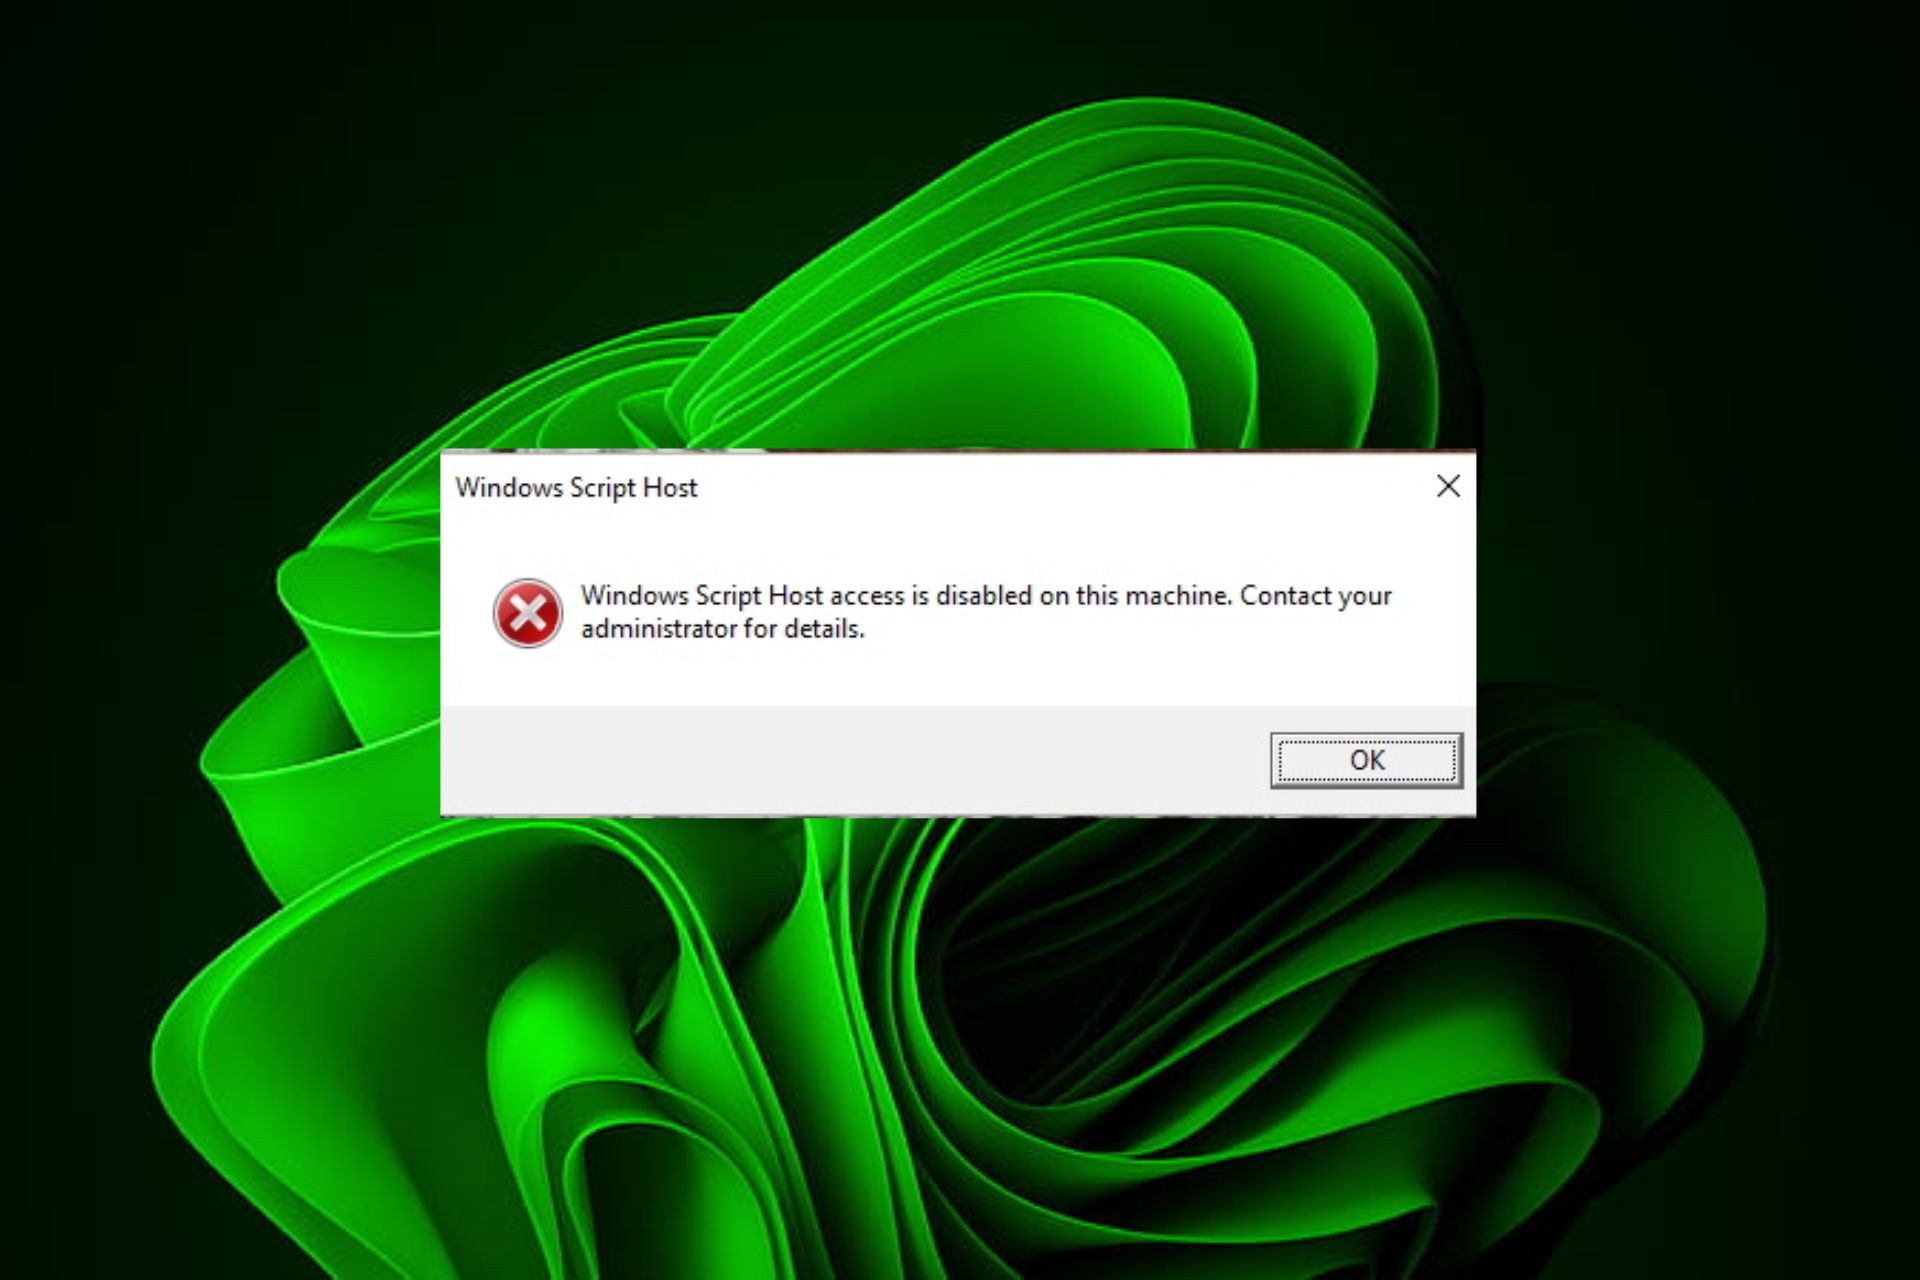 Solución: el acceso al host de Windows Script está deshabilitado en esta máquina